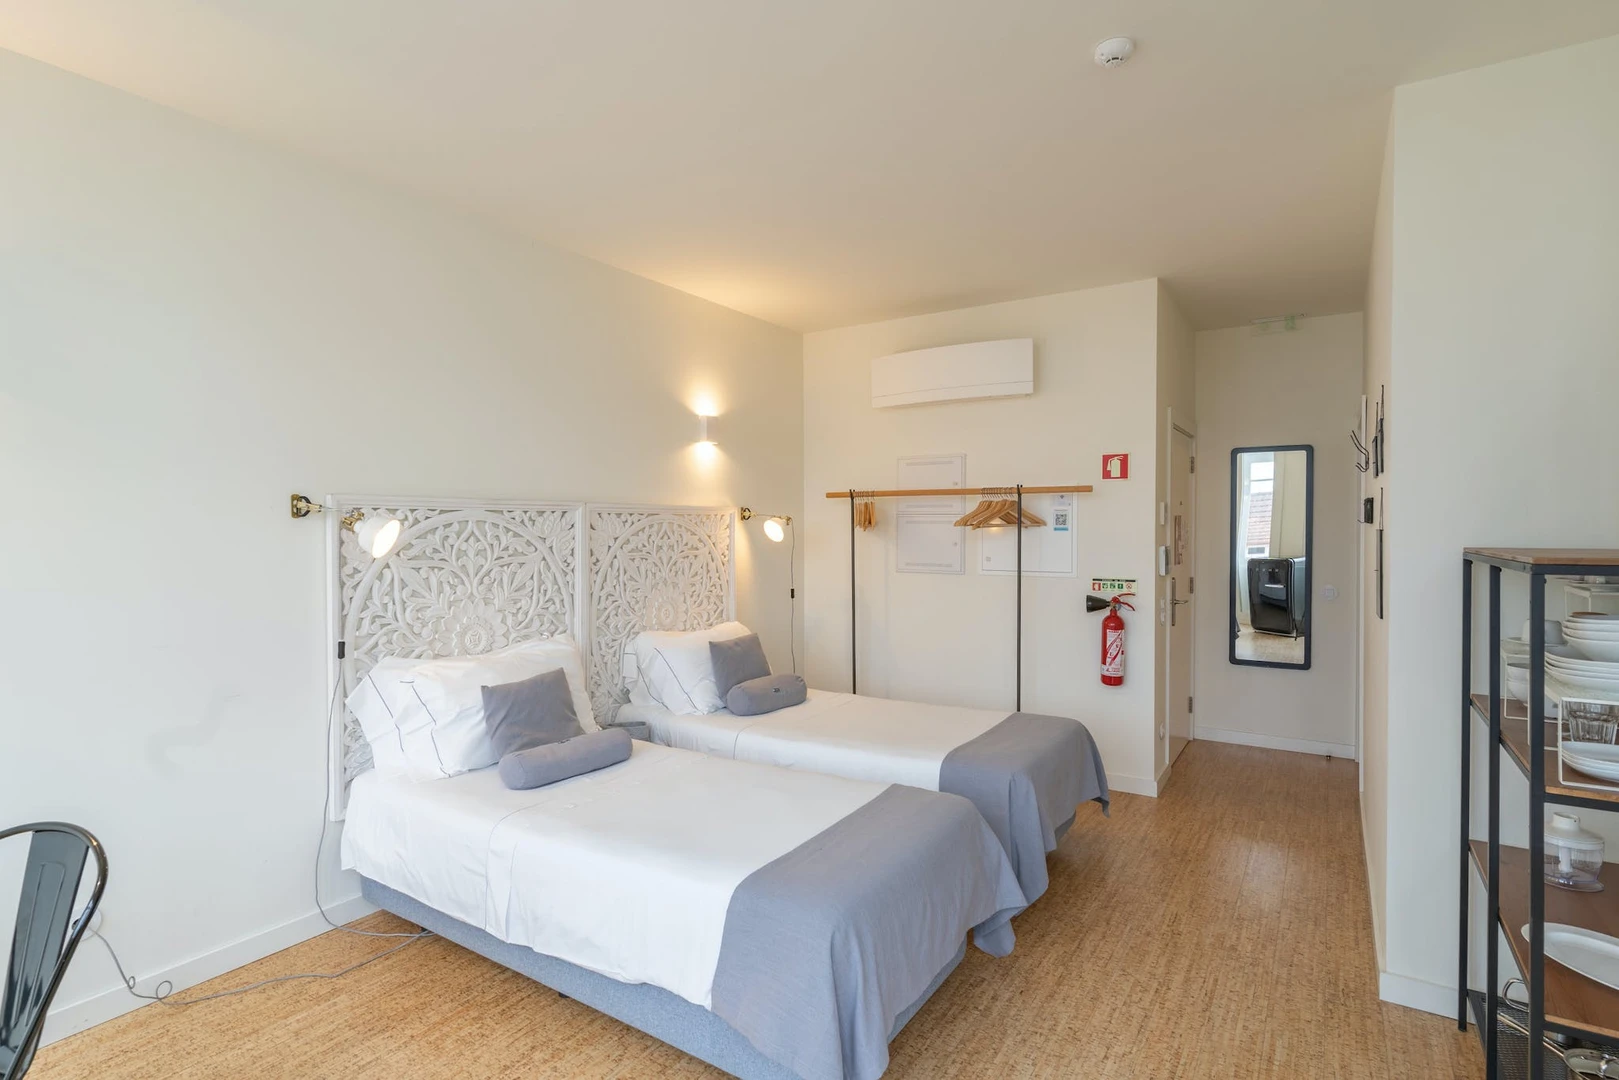 Porto içinde 2 yatak odalı konaklama